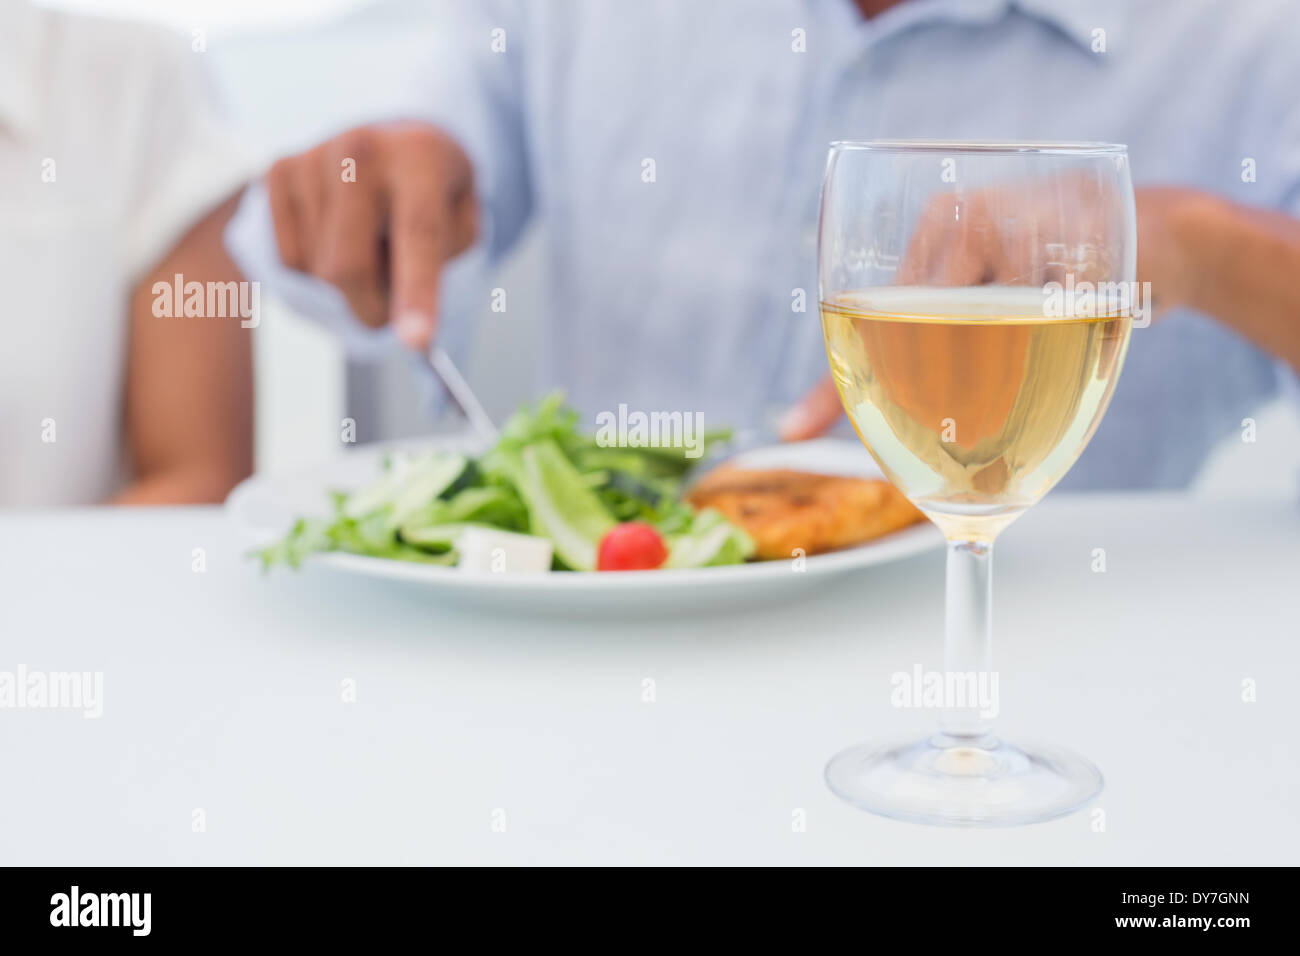 Copa de vino blanco en una tabla Foto de stock